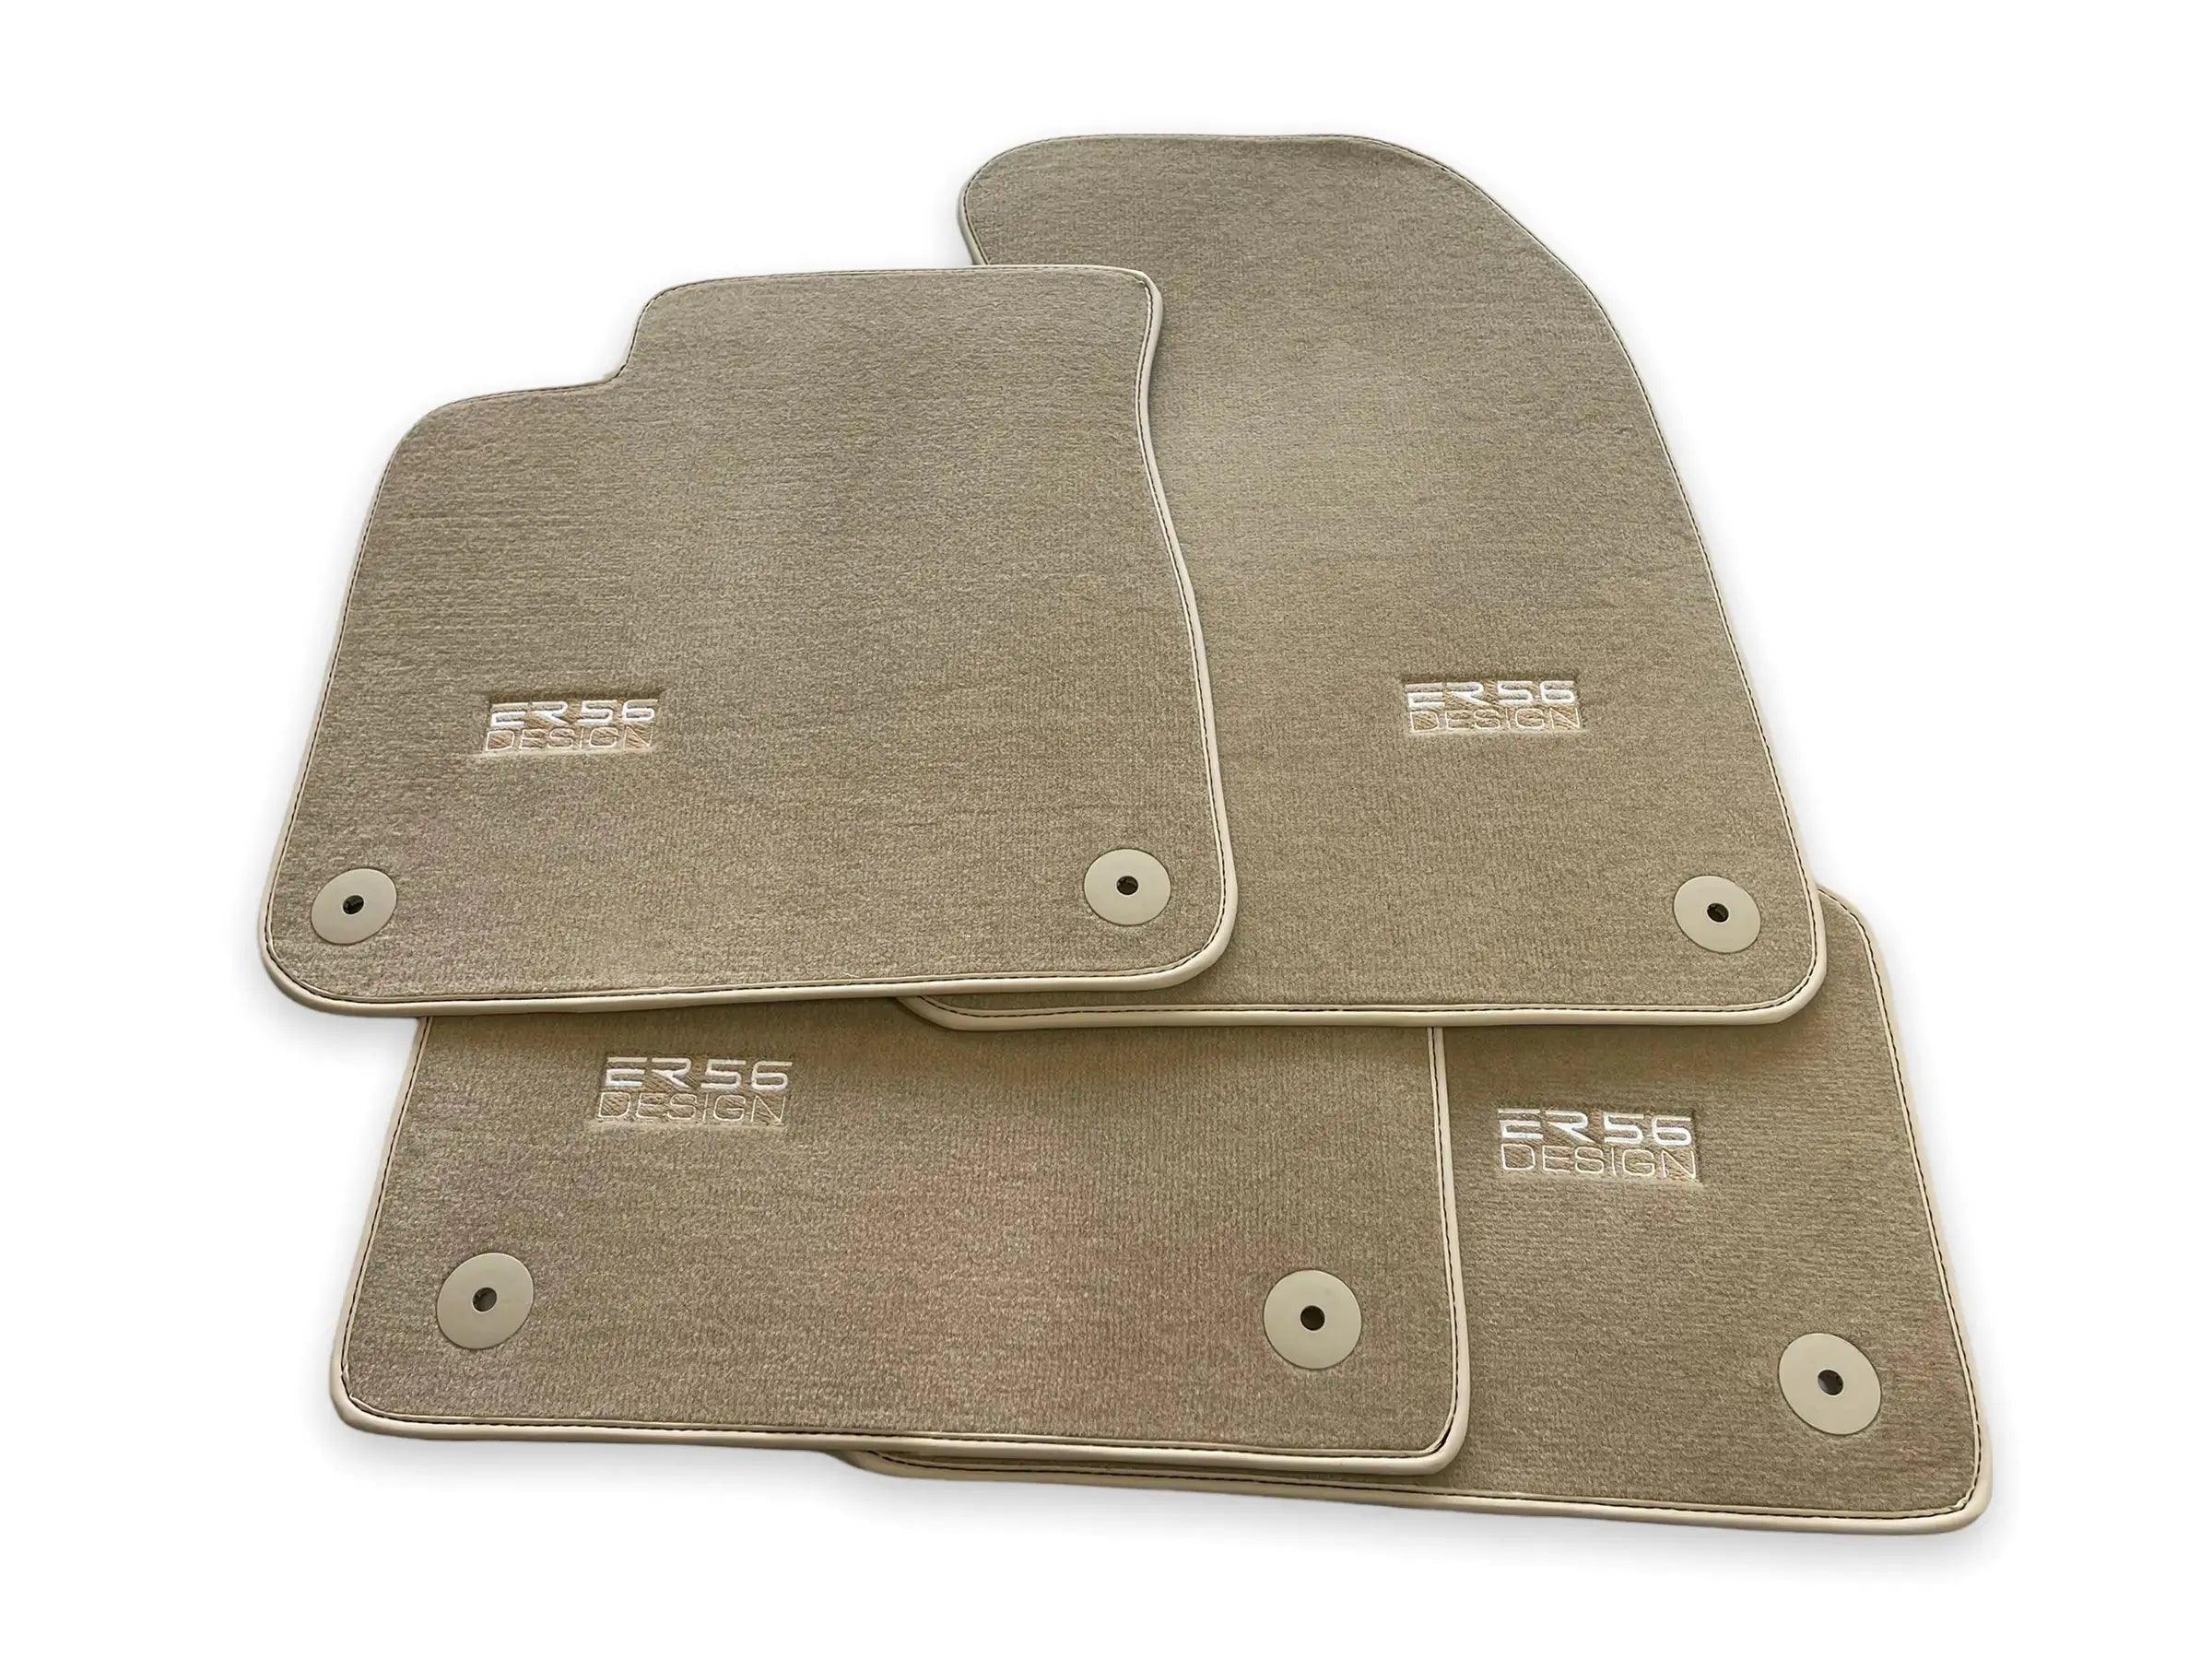 Beige Floor Mats for Audi A3 - 3-door Hatchback (2013-2020) | ER56 Design - AutoWin